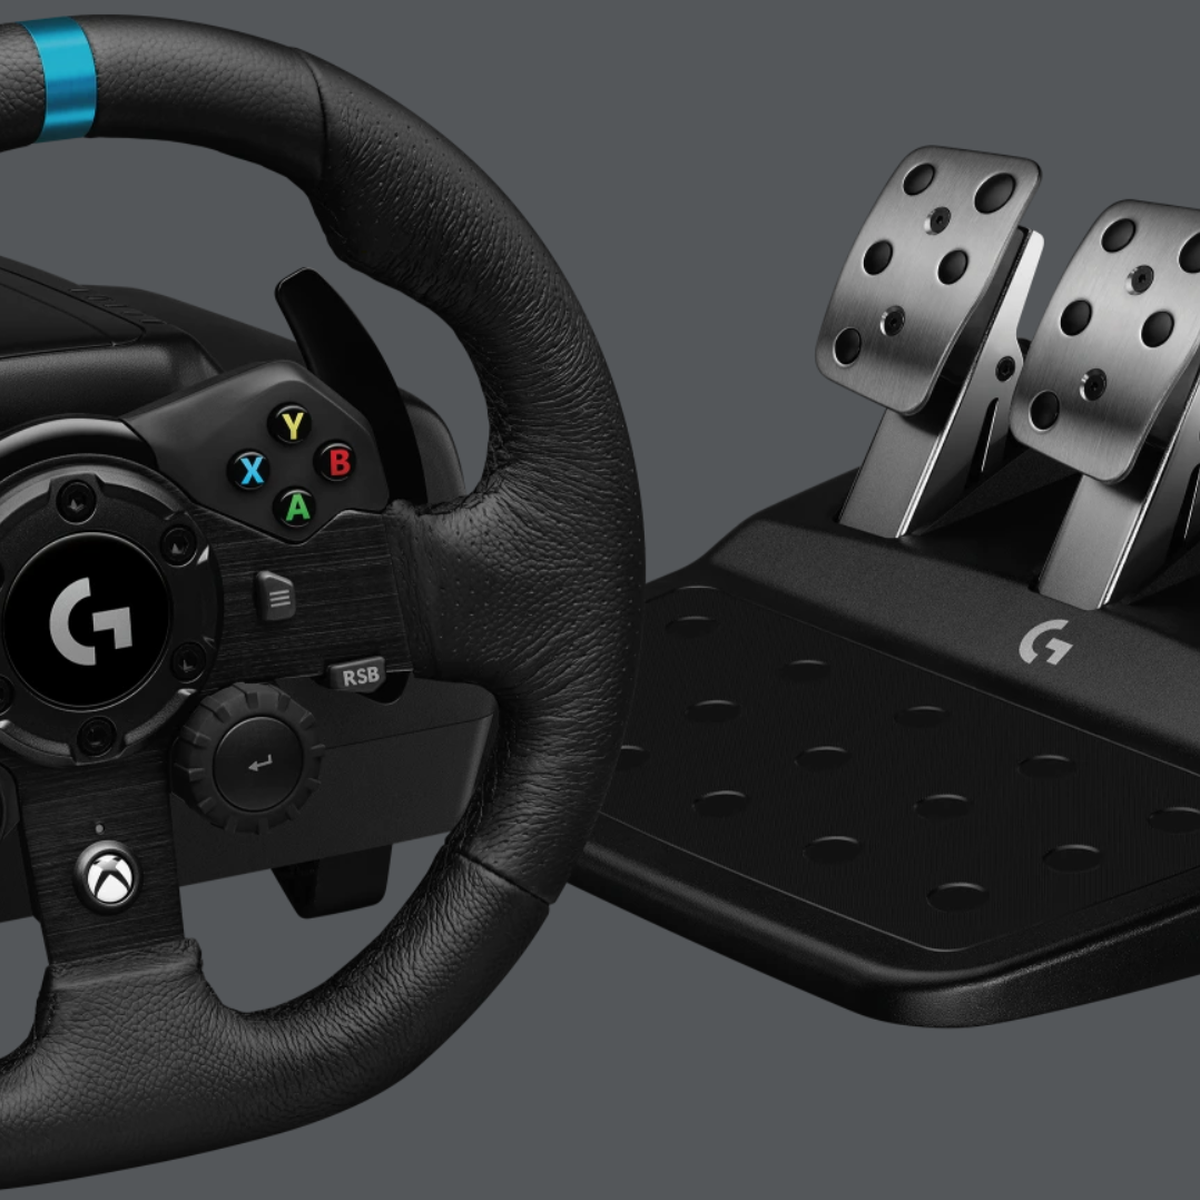 G923 Volante de carreras TRUEFORCE para Xbox, PlayStation y PC